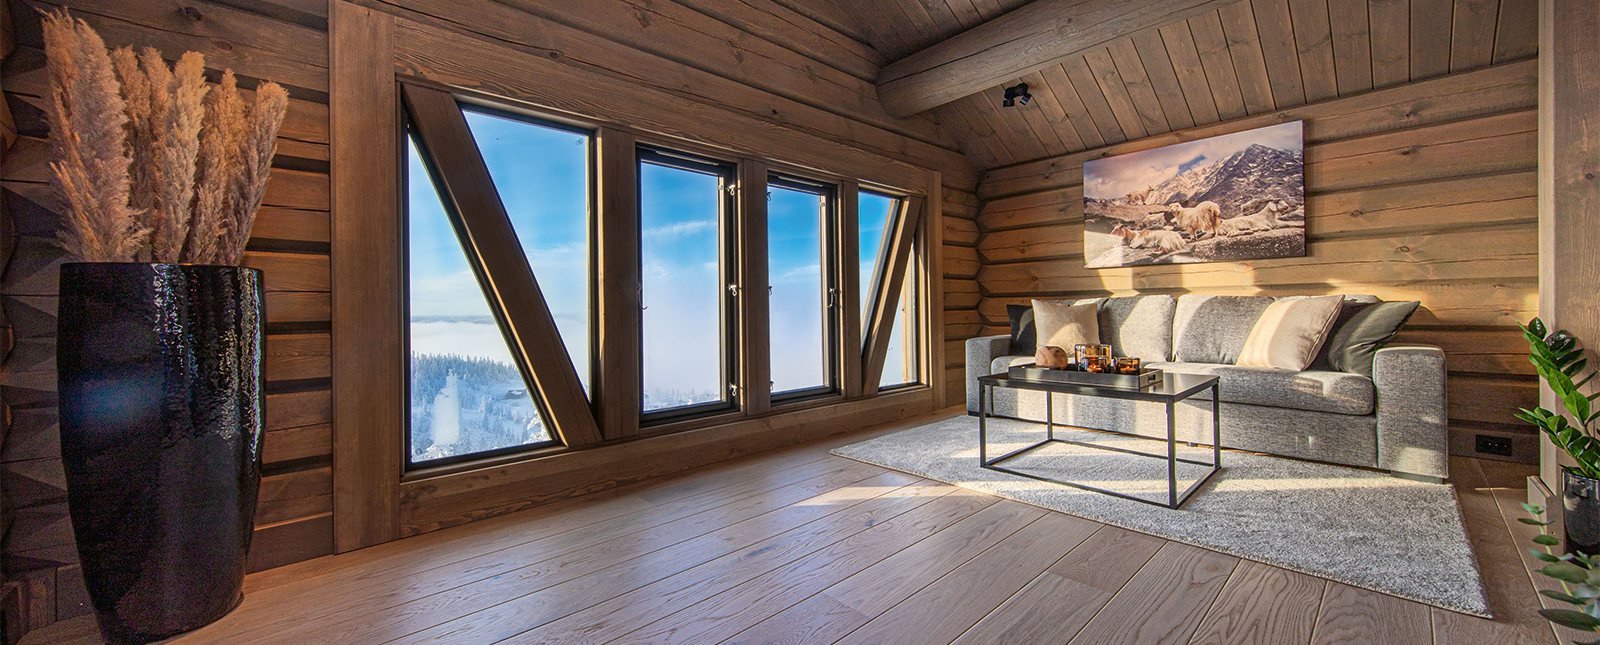 Oj! Design Blockhütten haben dank dem Osmo Dekorwachs in einem Sonderfarbton ein gemütliches Ambiente.